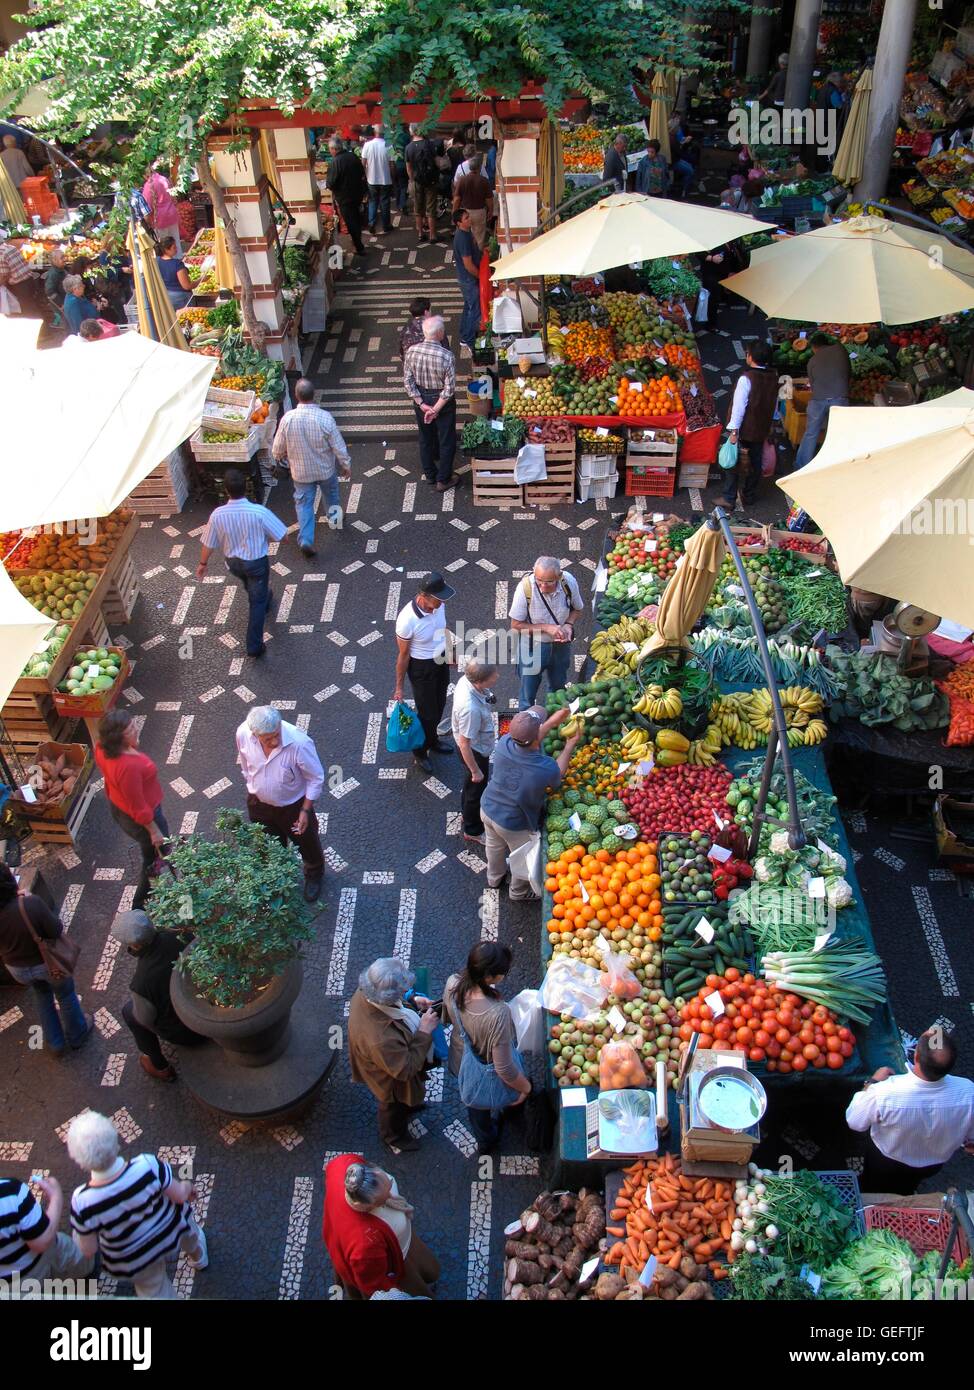 Mercado dos Lavradores, Funchal, Madeira Foto Stock